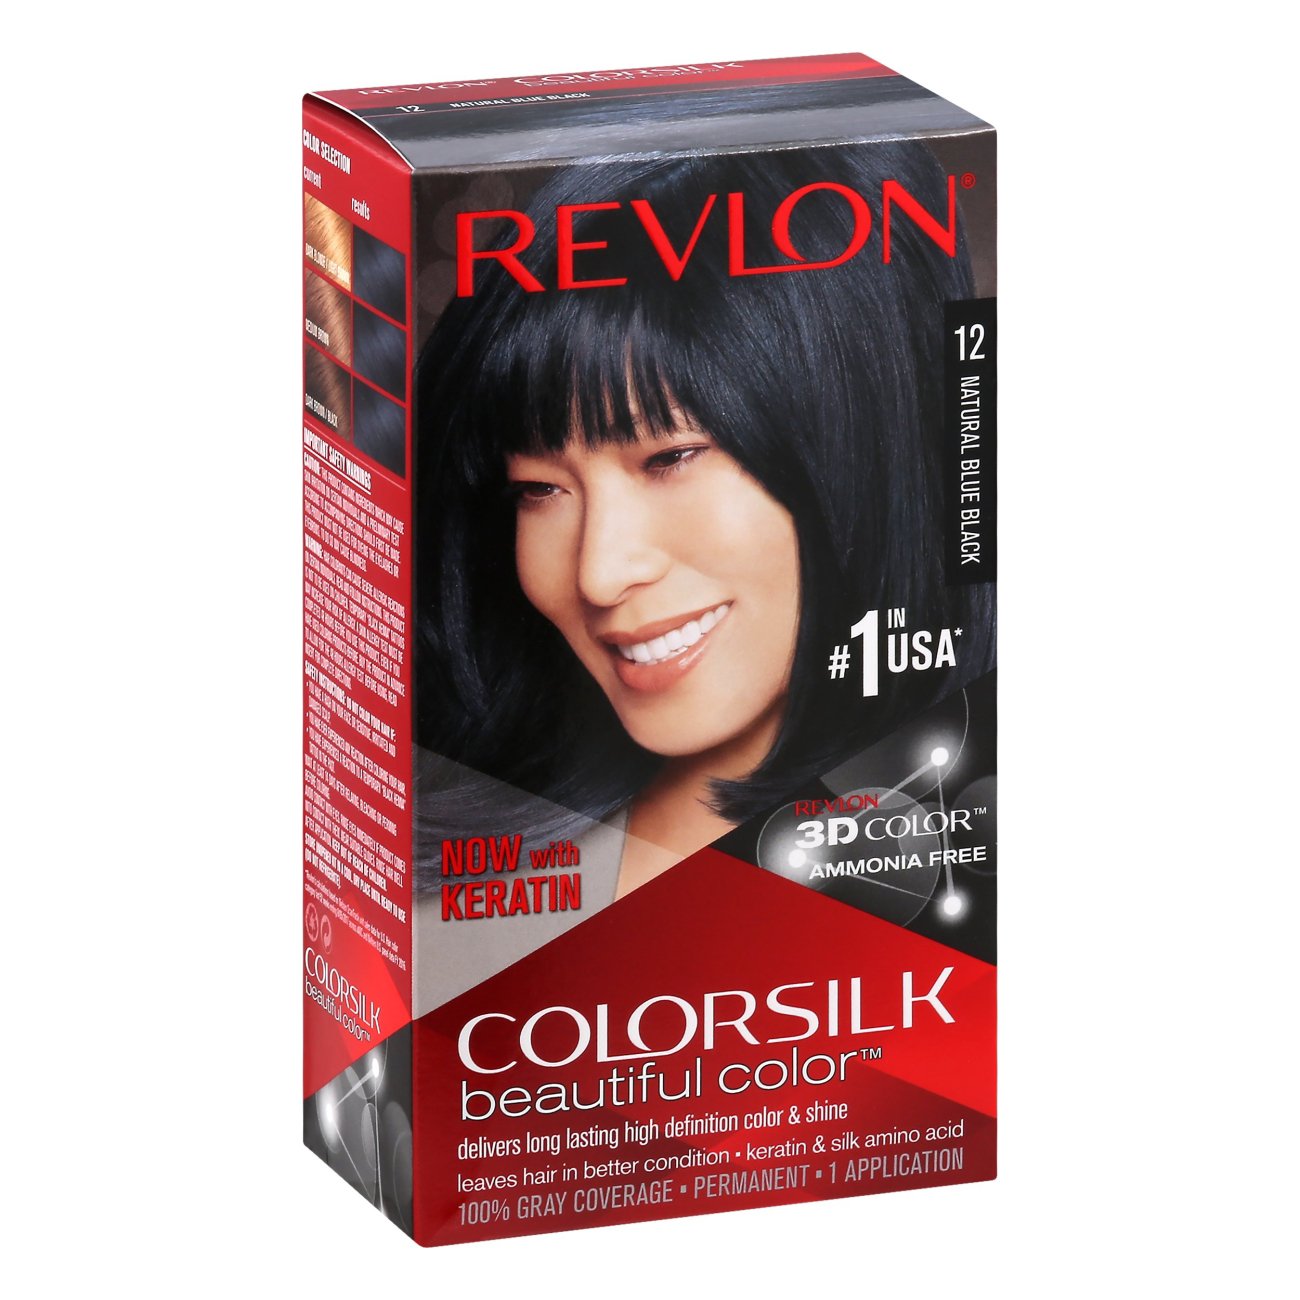 Revlon Colorsilk Beautiful Color 12 Natural Blue Black Shop Hair Color At H E B